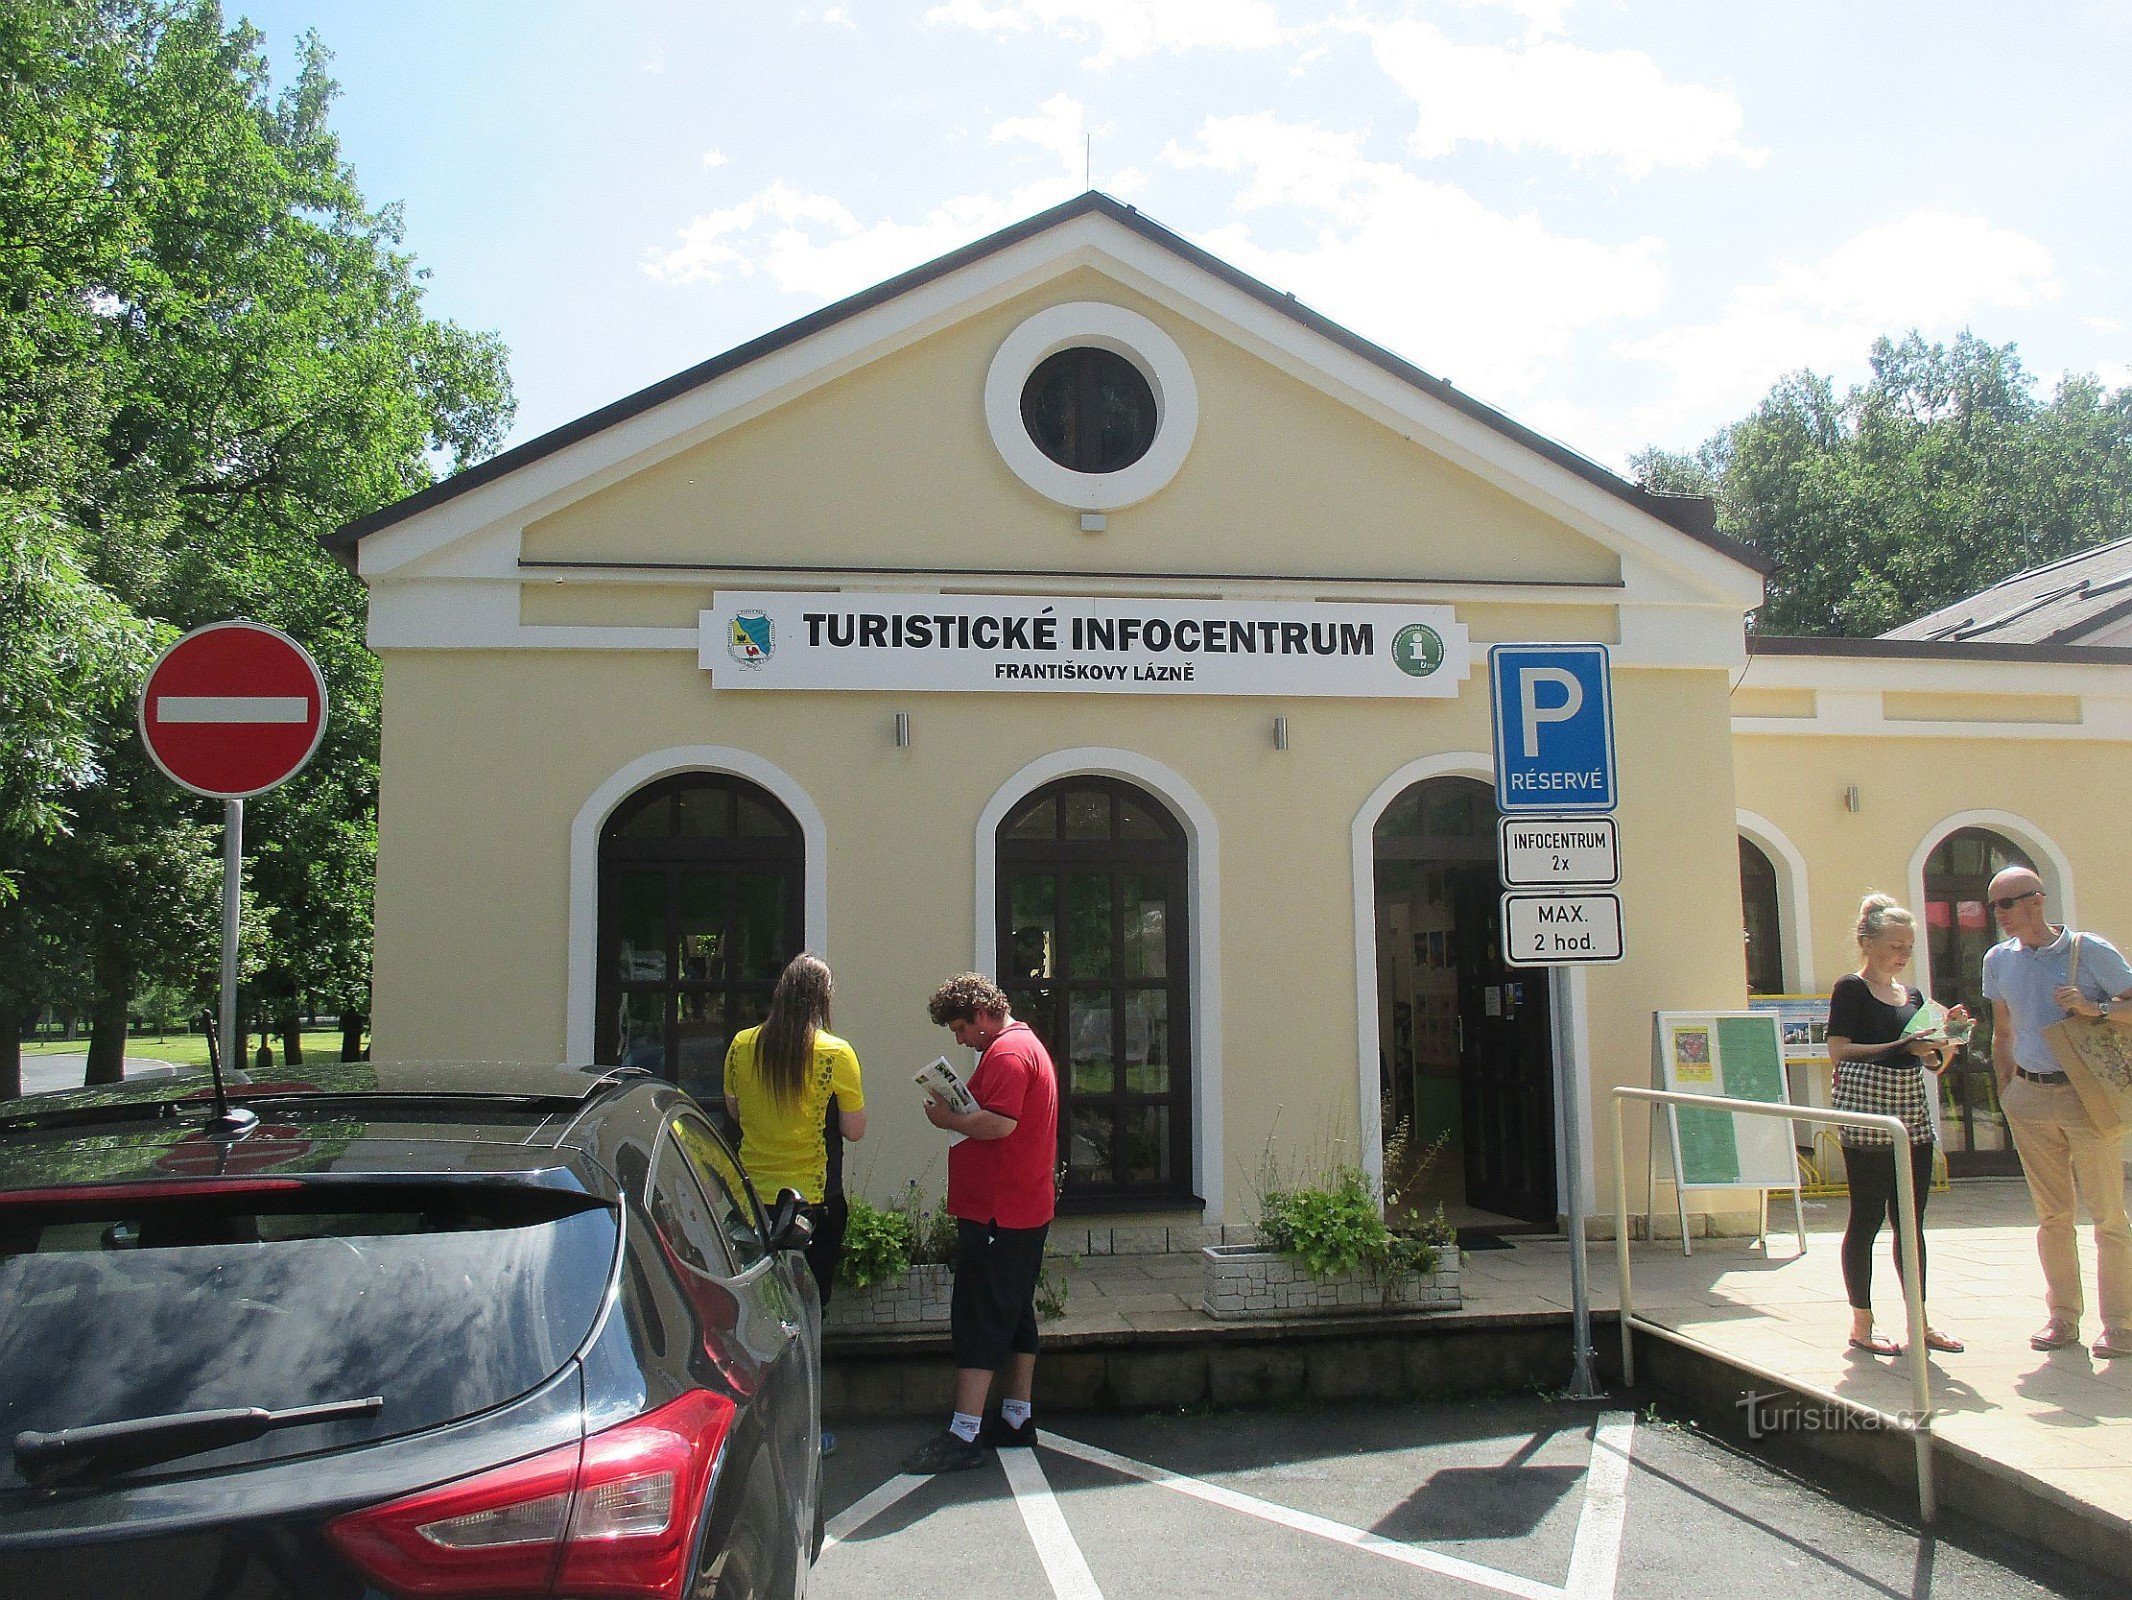 Františkovy Lázně - Information center